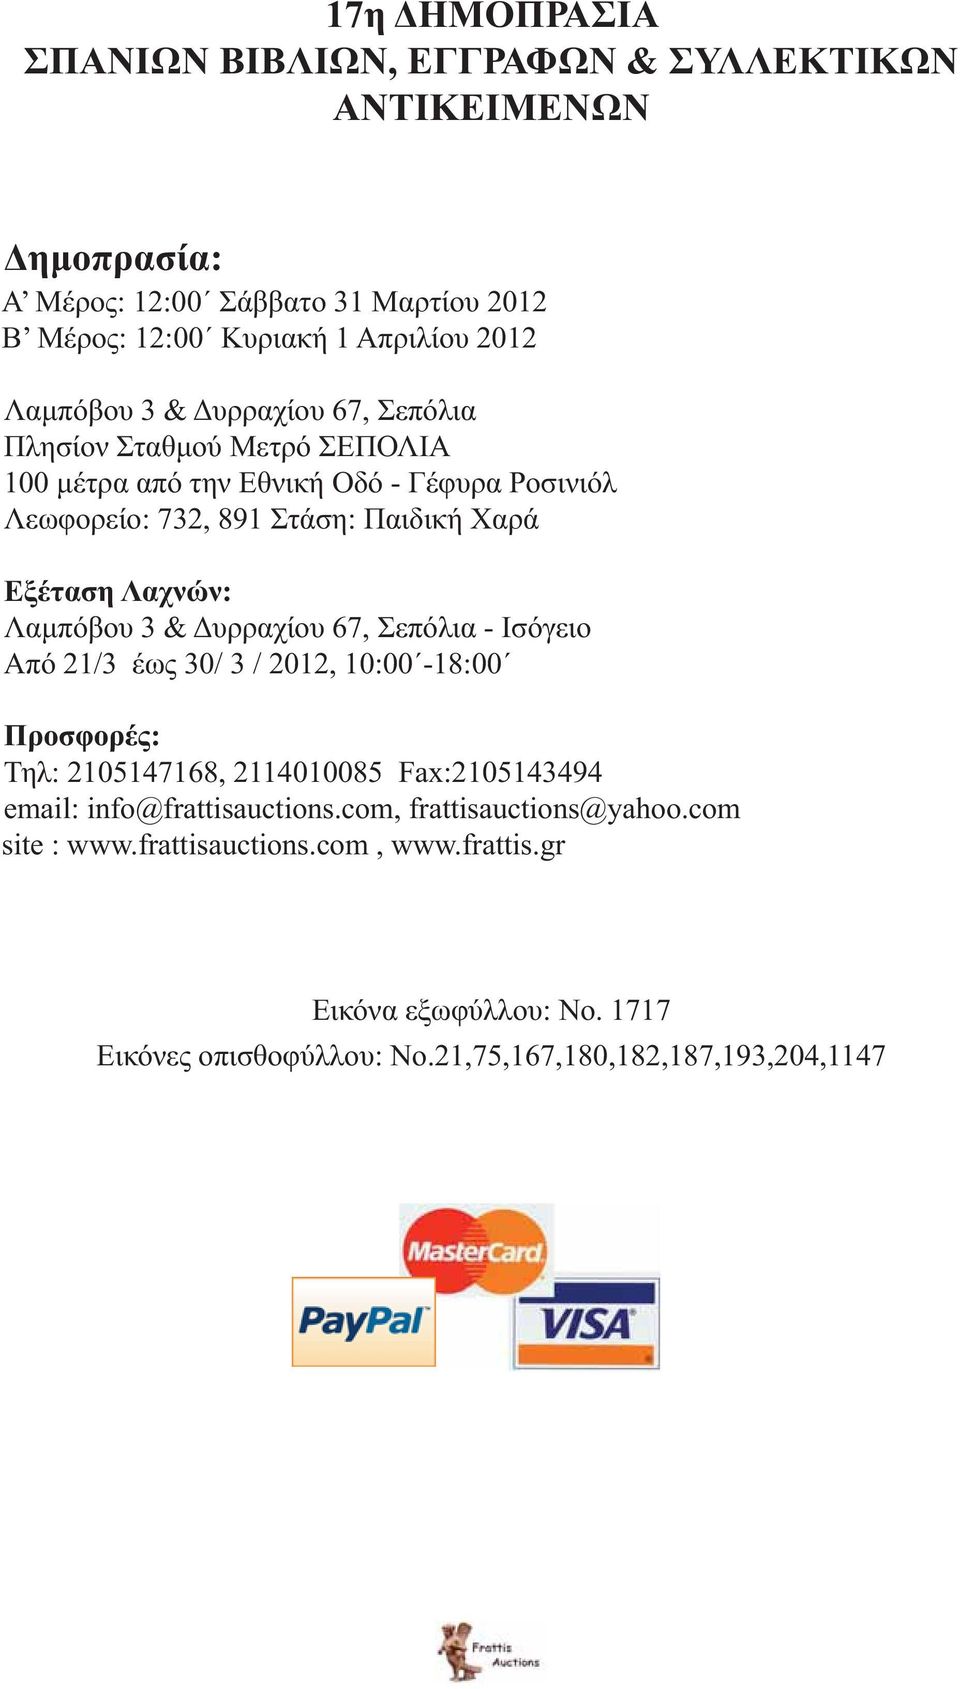 Λαχνών: Λαμπόβου 3 & Δυρραχίου 67, Σεπόλια - Ισόγειο Από 21/3 έως 30/ 3 / 2012, 10:00-18:00 Προσφορές: Τηλ: 2105147168, 2114010085 Fax:2105143494 email: